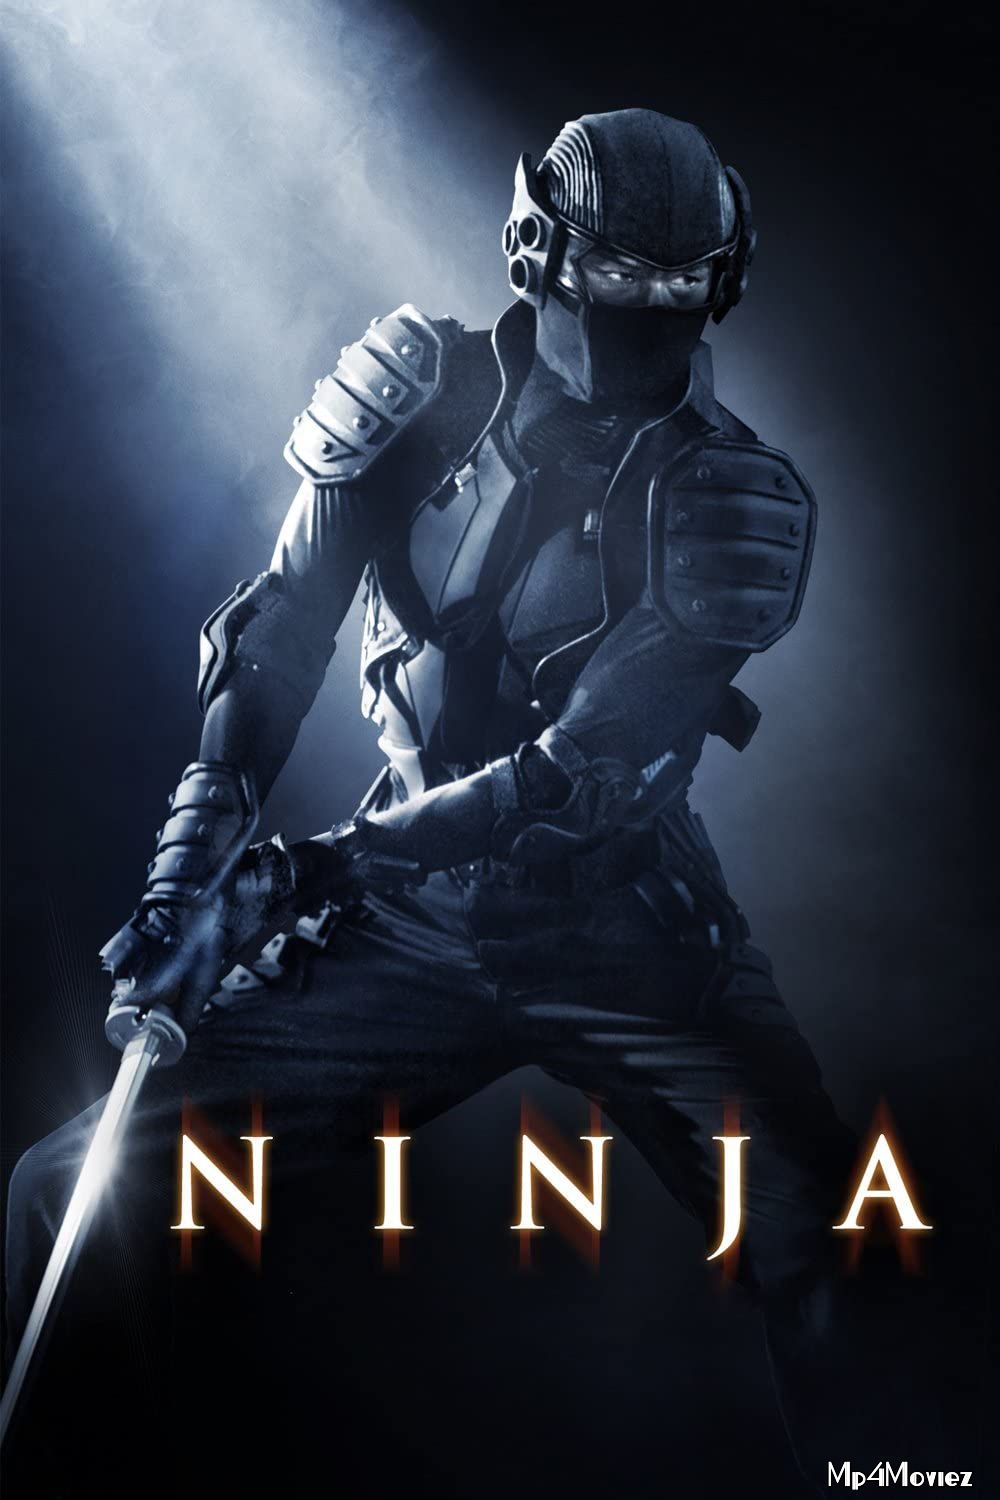 Ninja 2009 Hindi Dubbed Movie download full movie